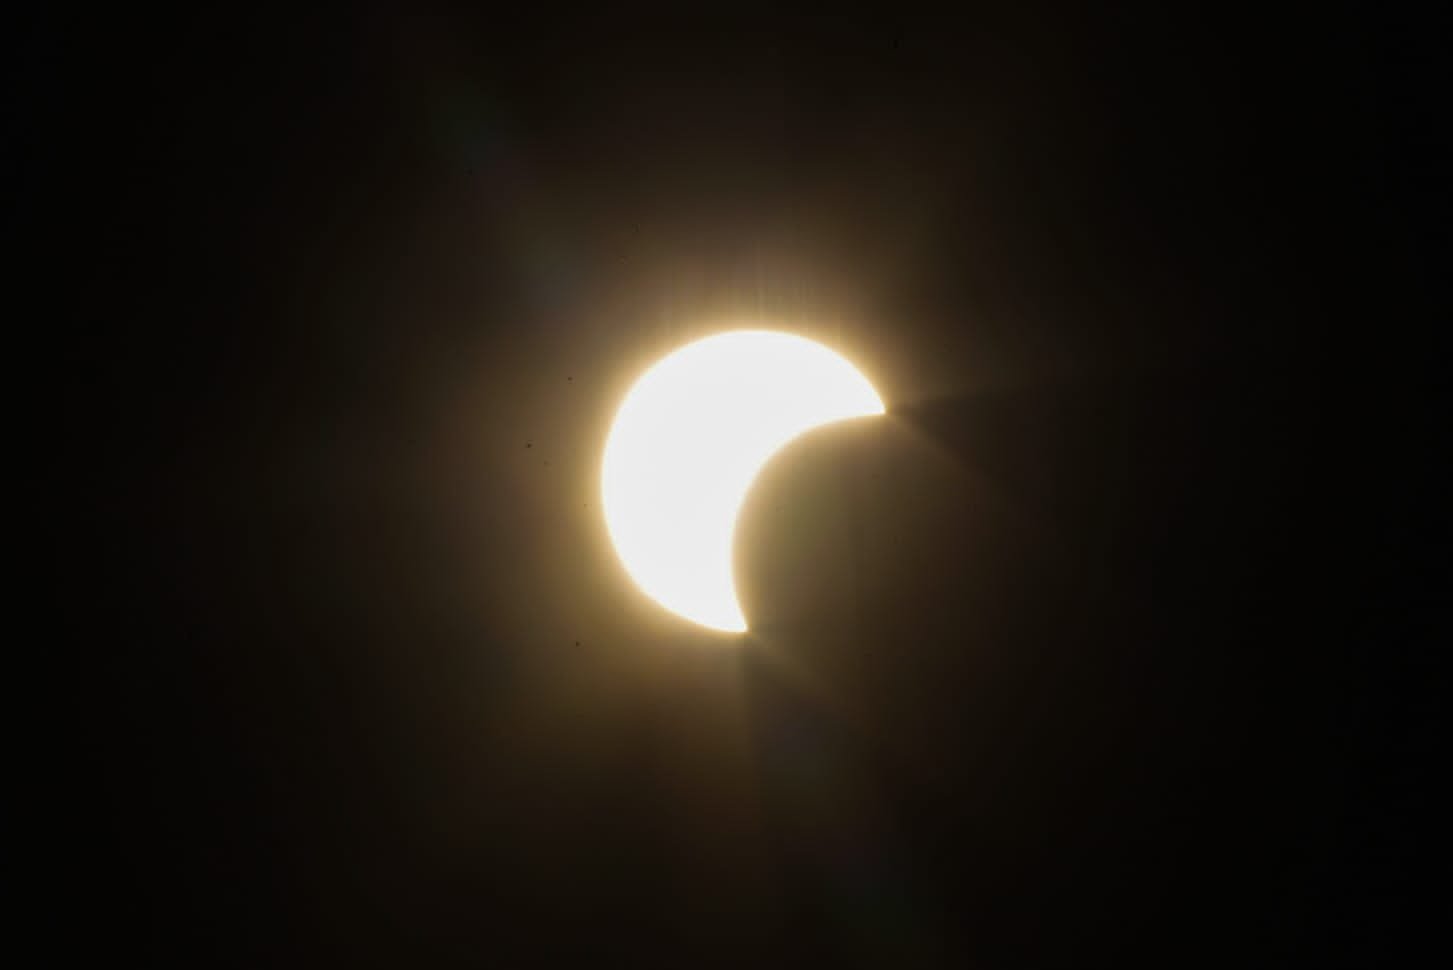 Imagens da Nasa mostram sombra passando pelo Brasil durante eclipse